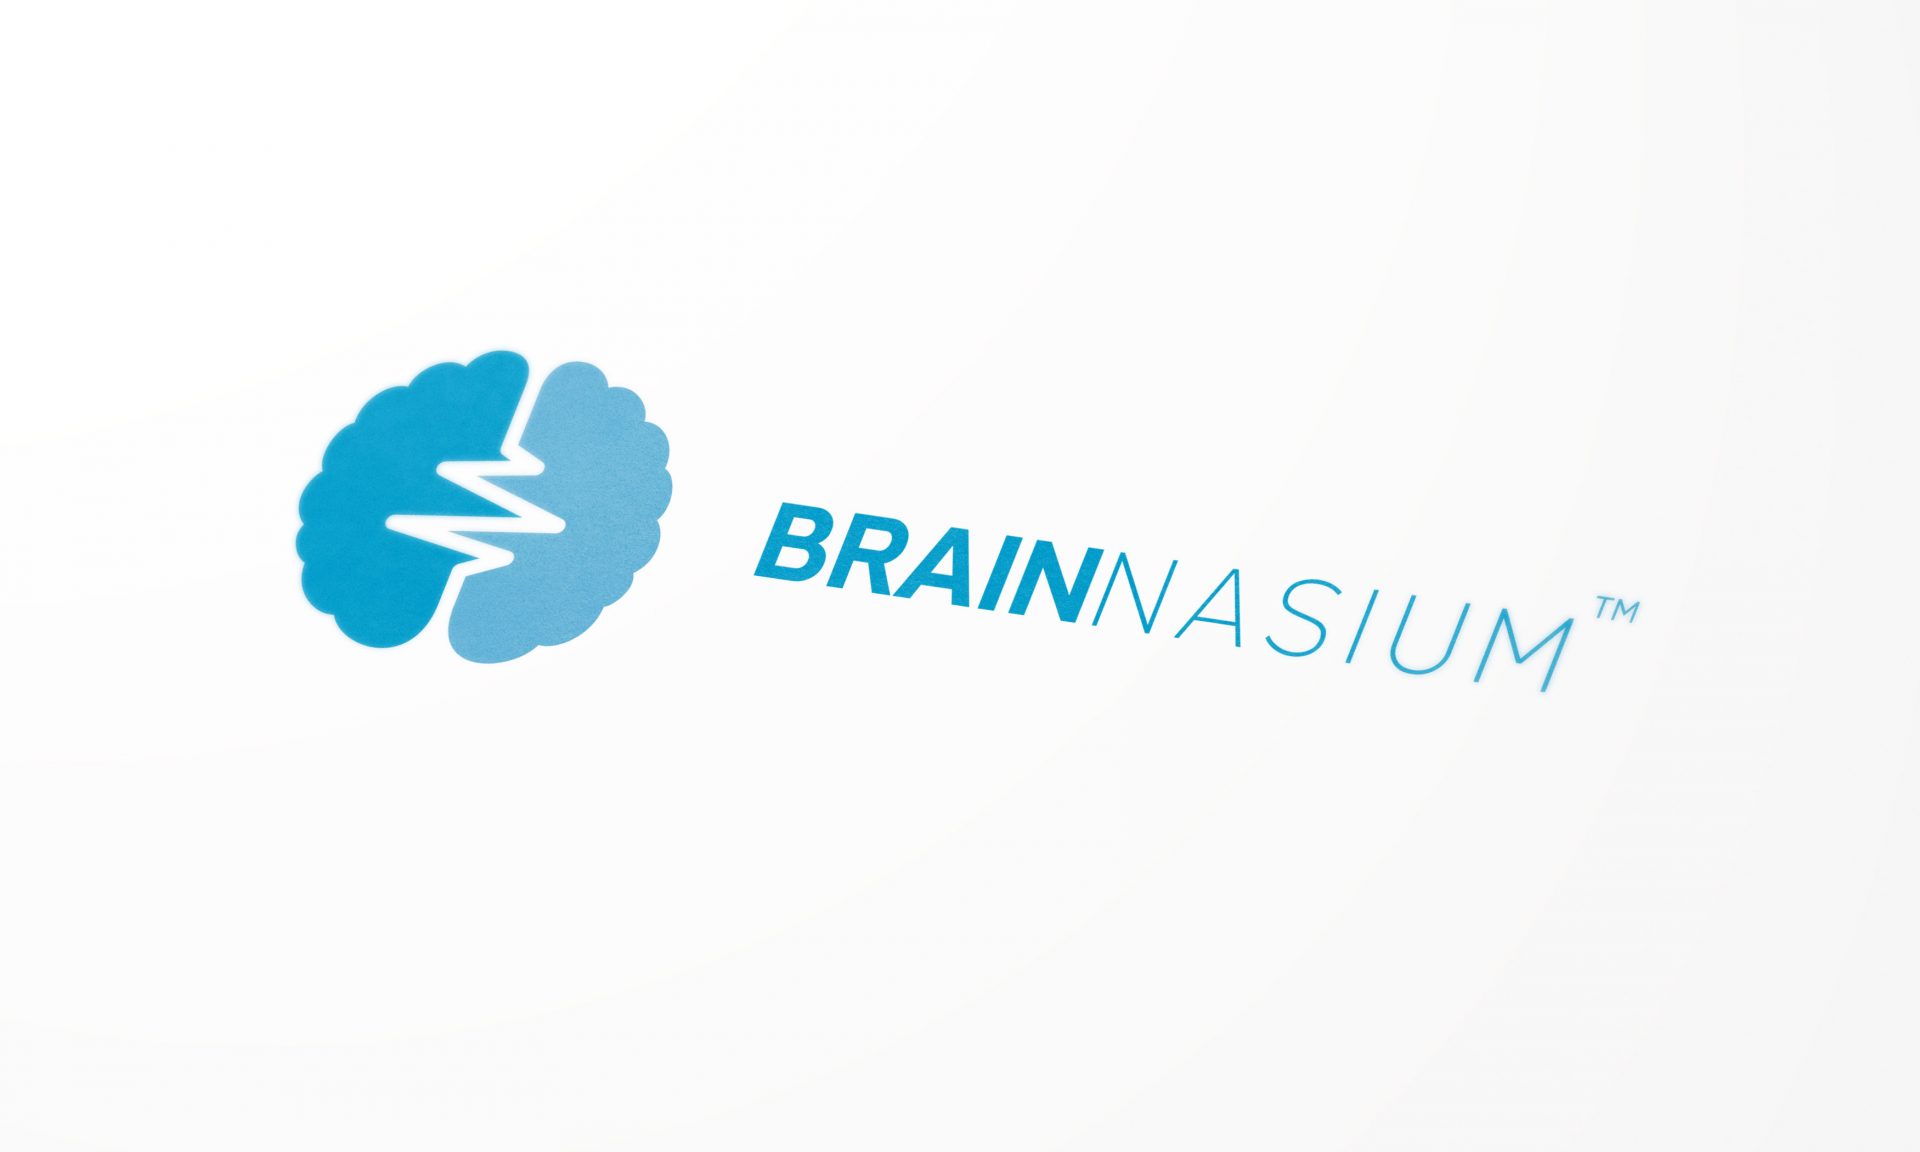 Brainnasium